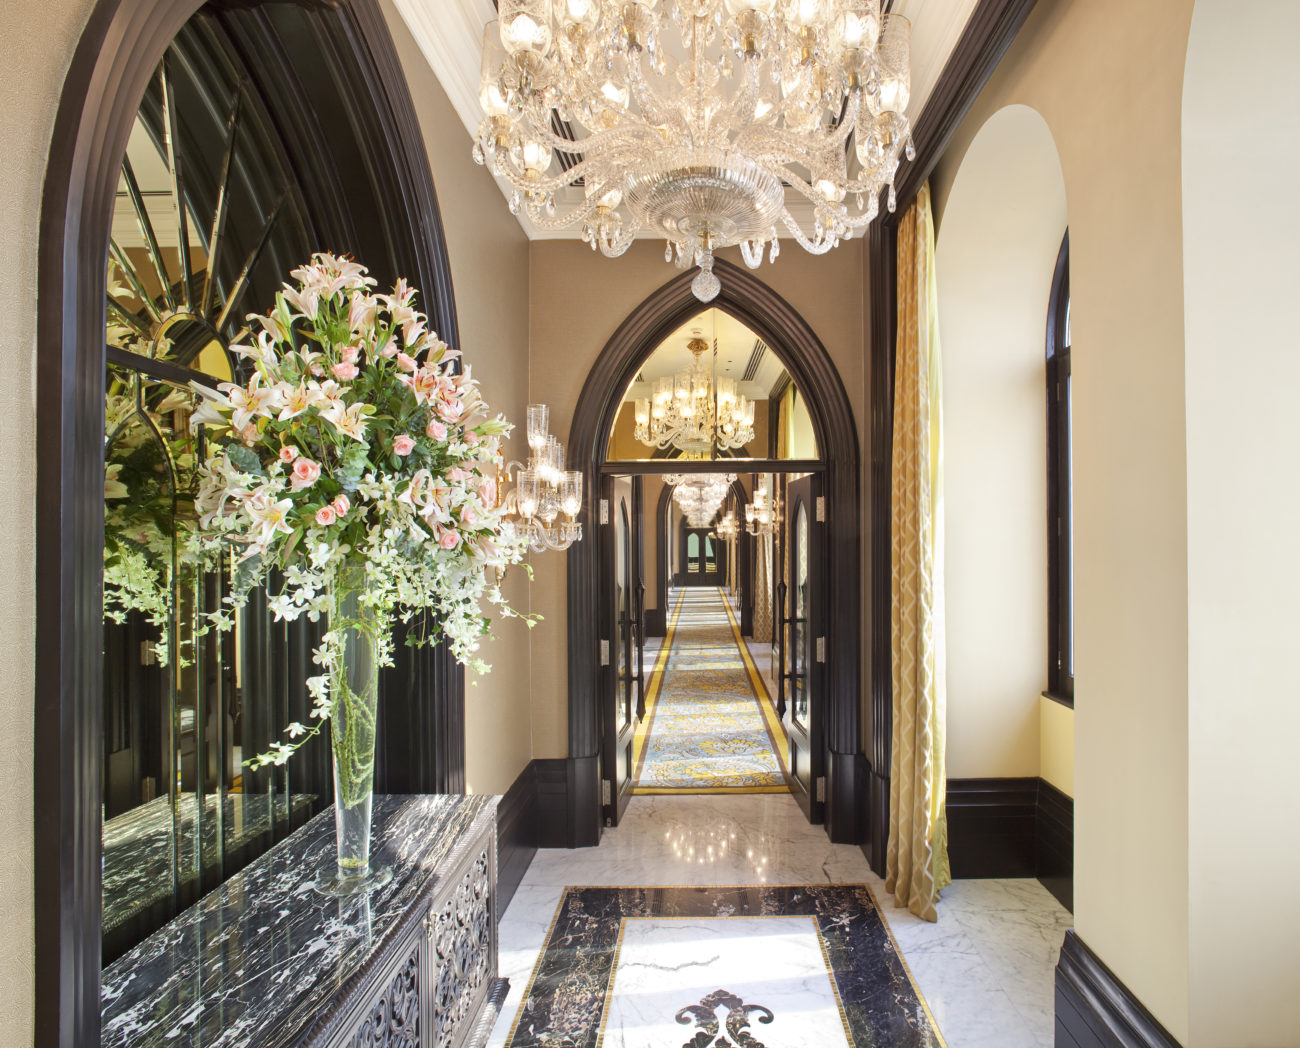 ball-room-corridor-flowers-light-healing-taj-mahal-palace-mumbai-hotel-india